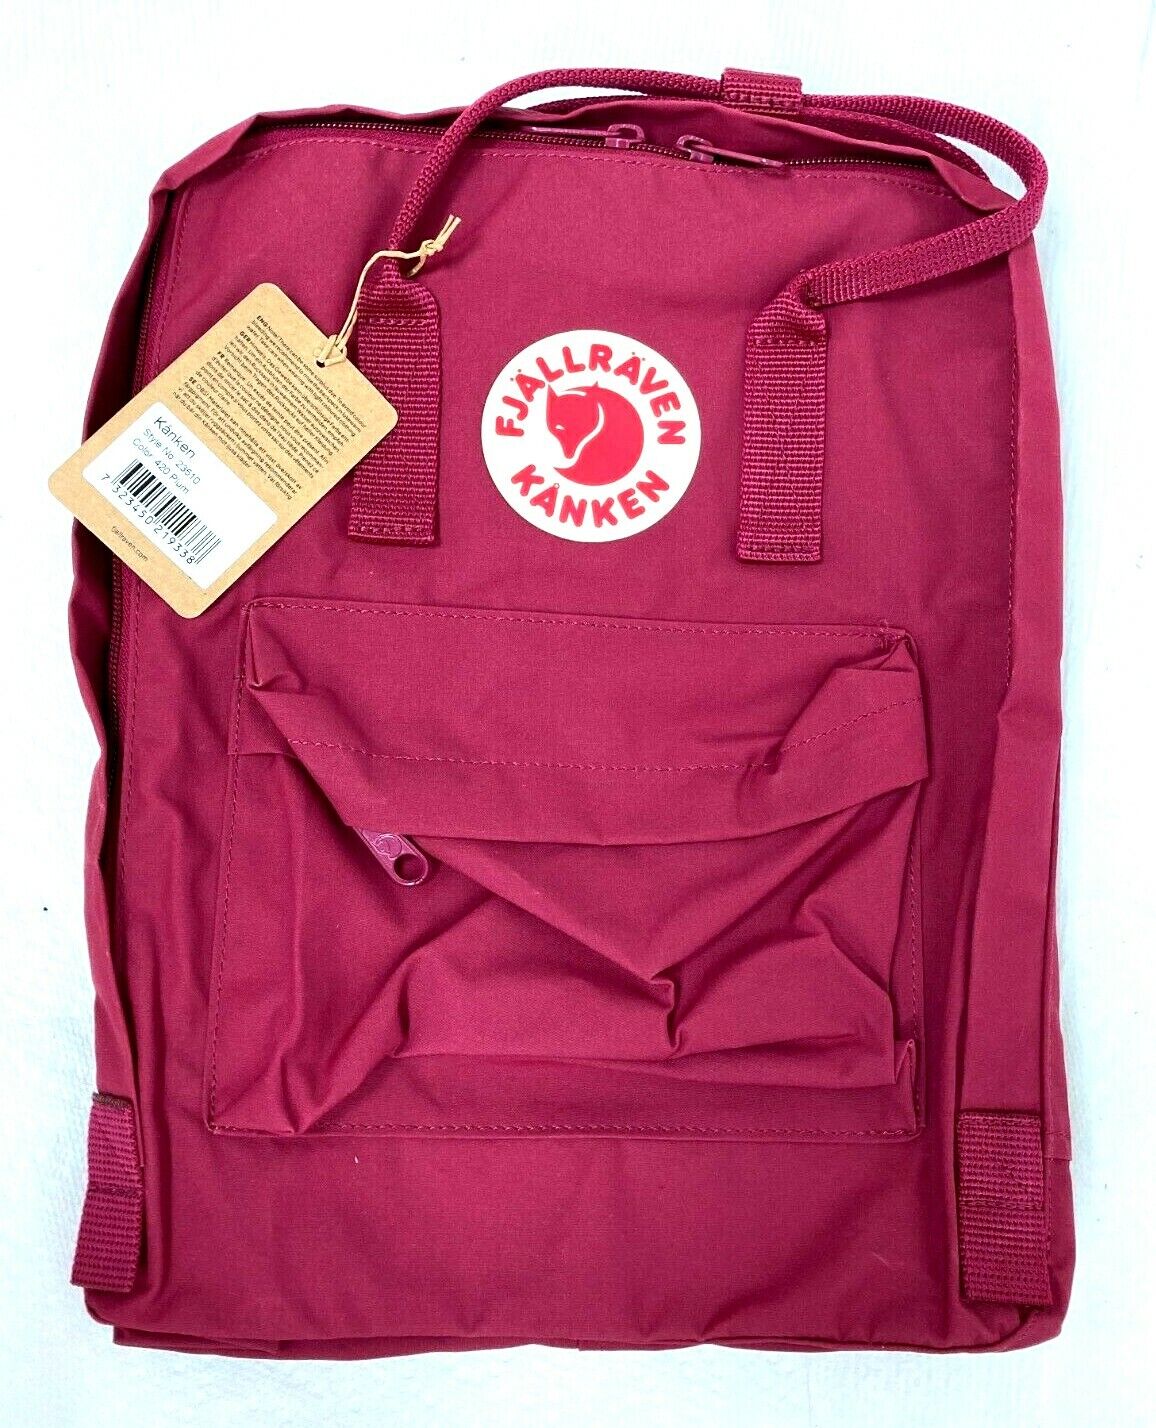 Fjallraven, Kanken Classic Backpack for Everyday, Plum